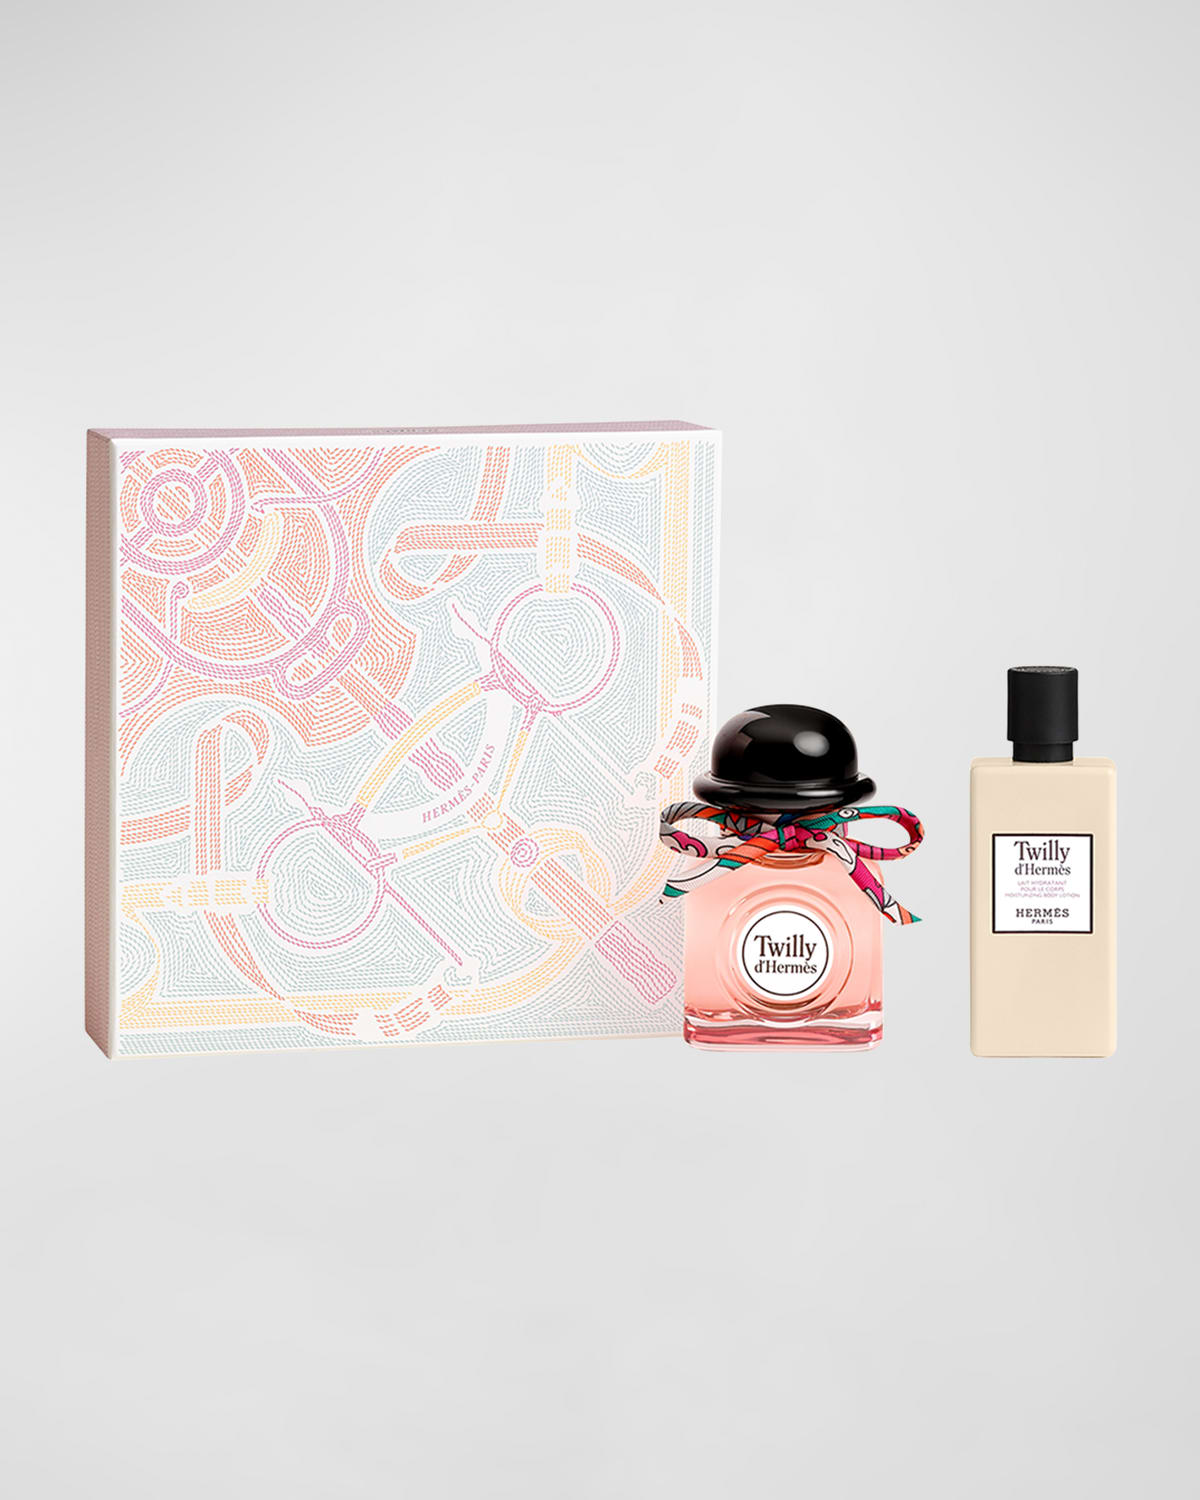 Hermès Twilly d'Herms Eau de Parfum Gift Set